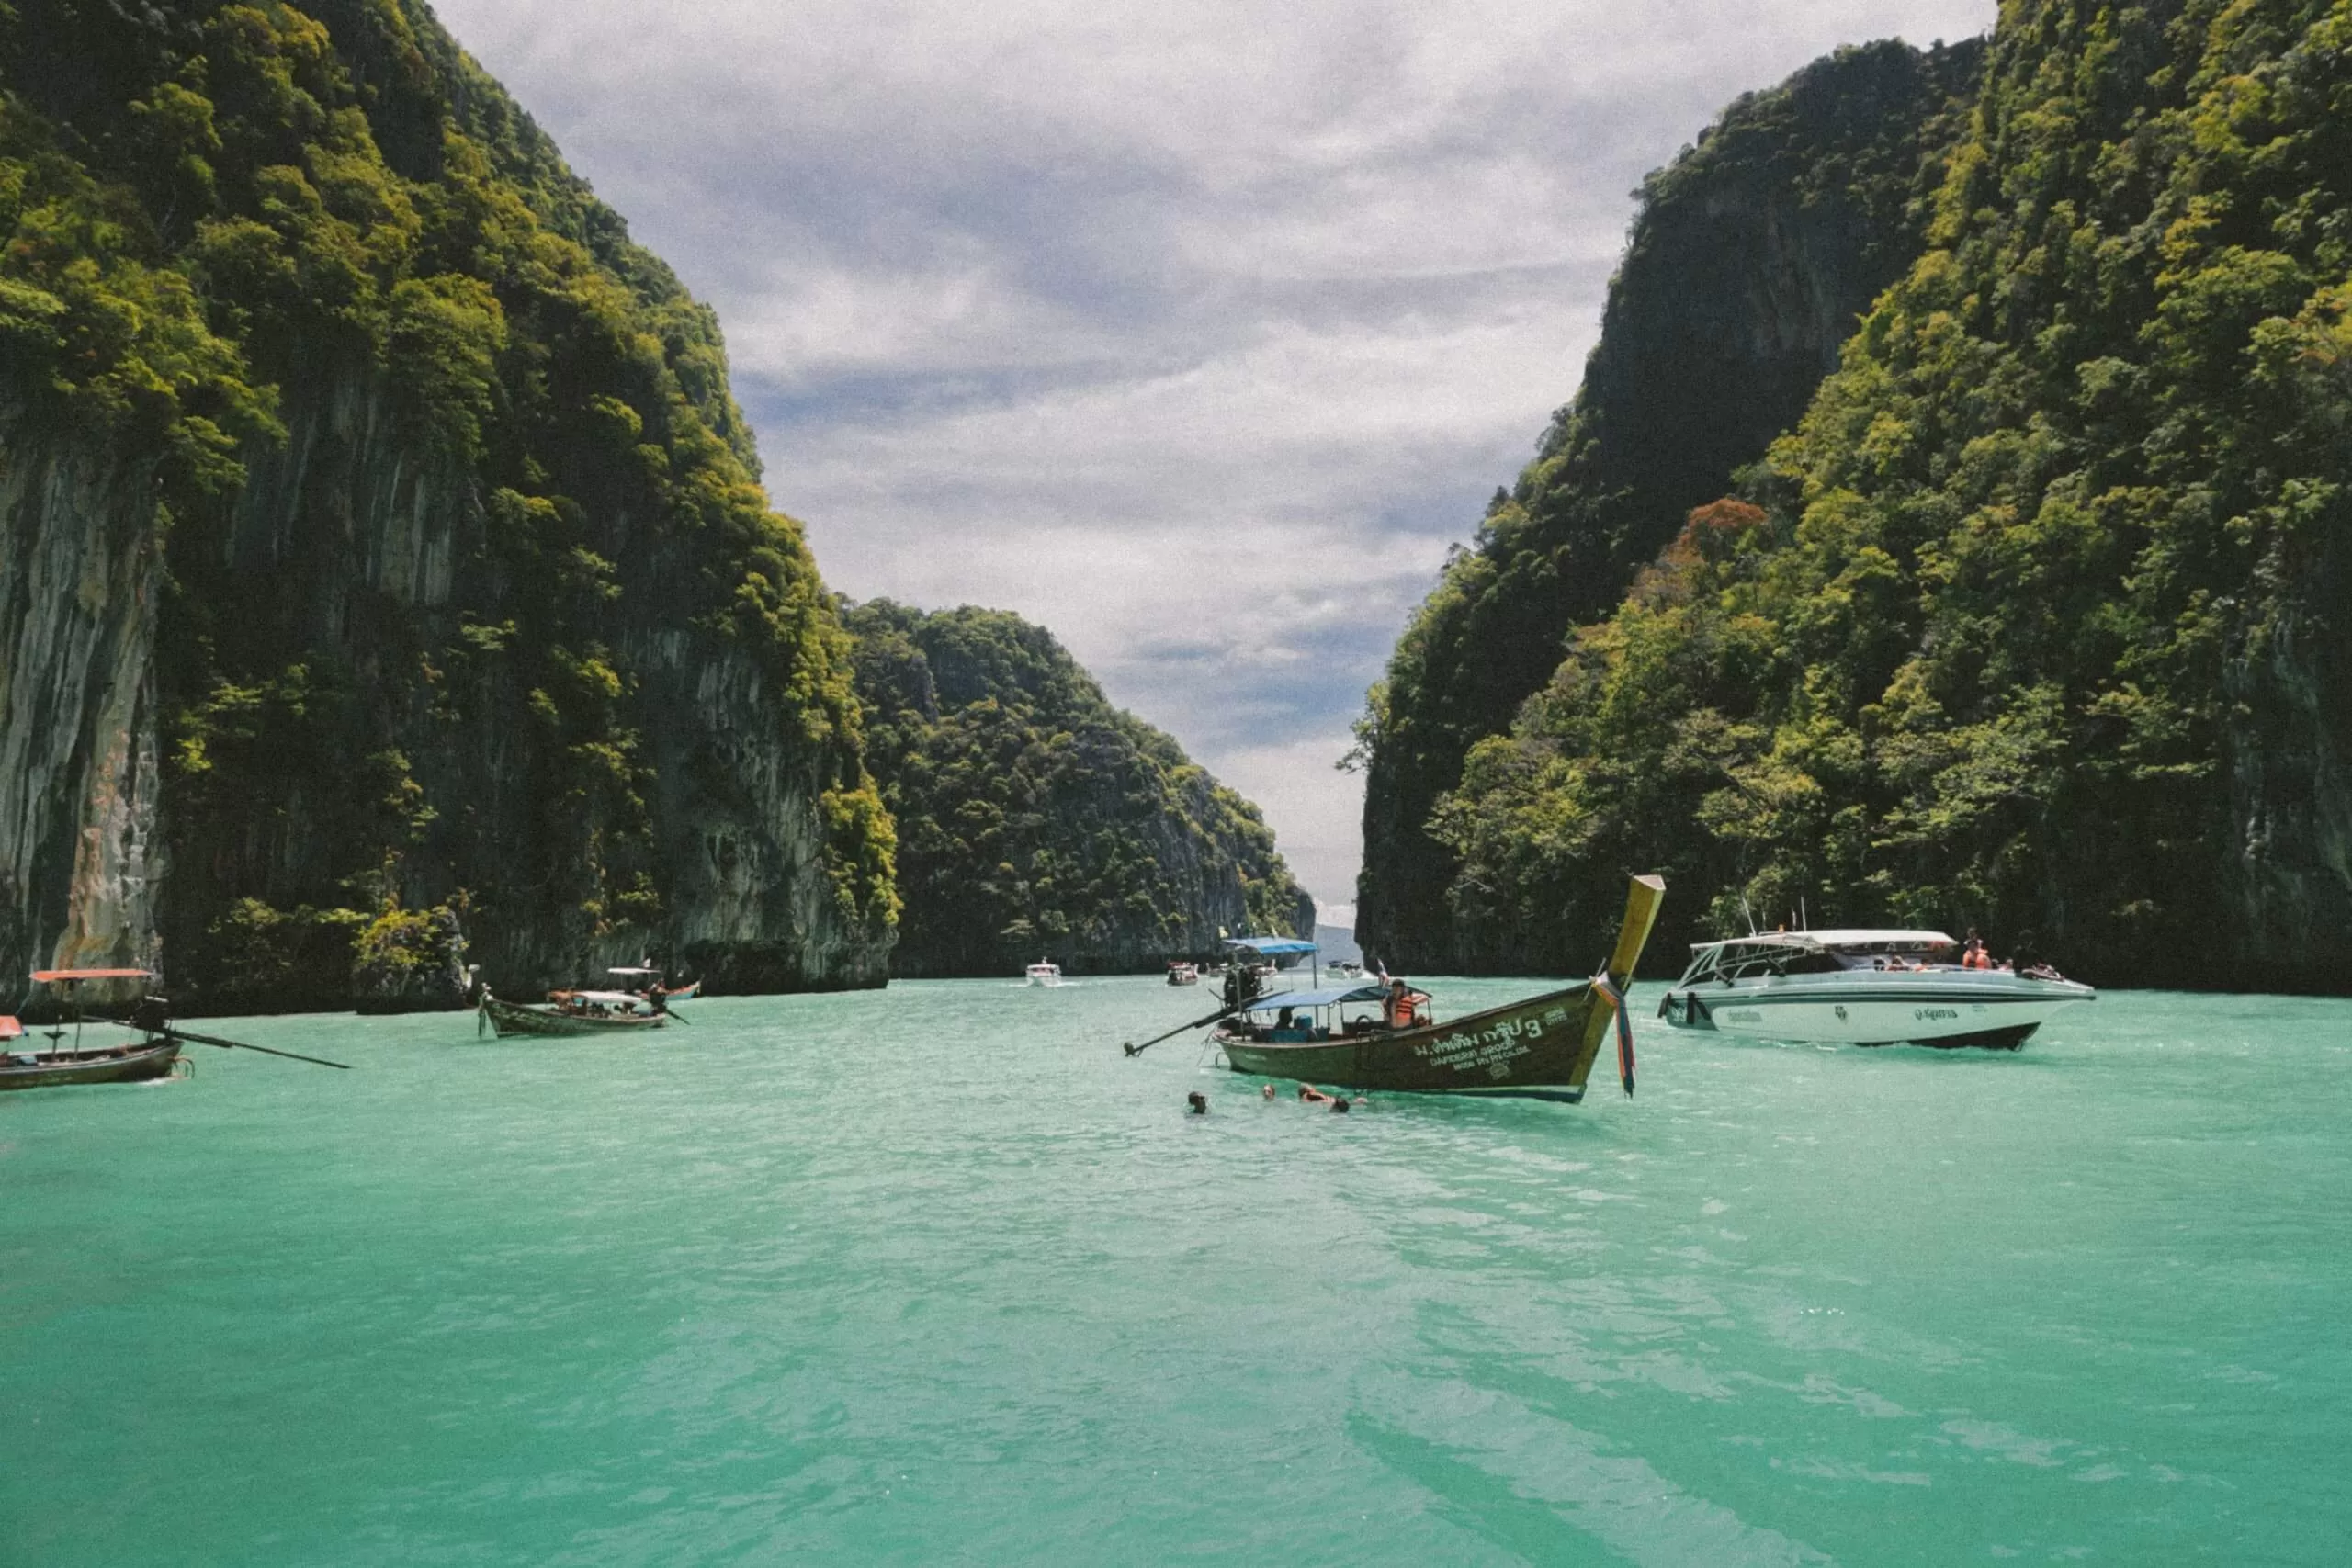 Guia de Koh Phi Phi, travel bloger, sudeste asiatico, viajar, tailandia, koh lipe, islas de tailandia, playas de tailandia